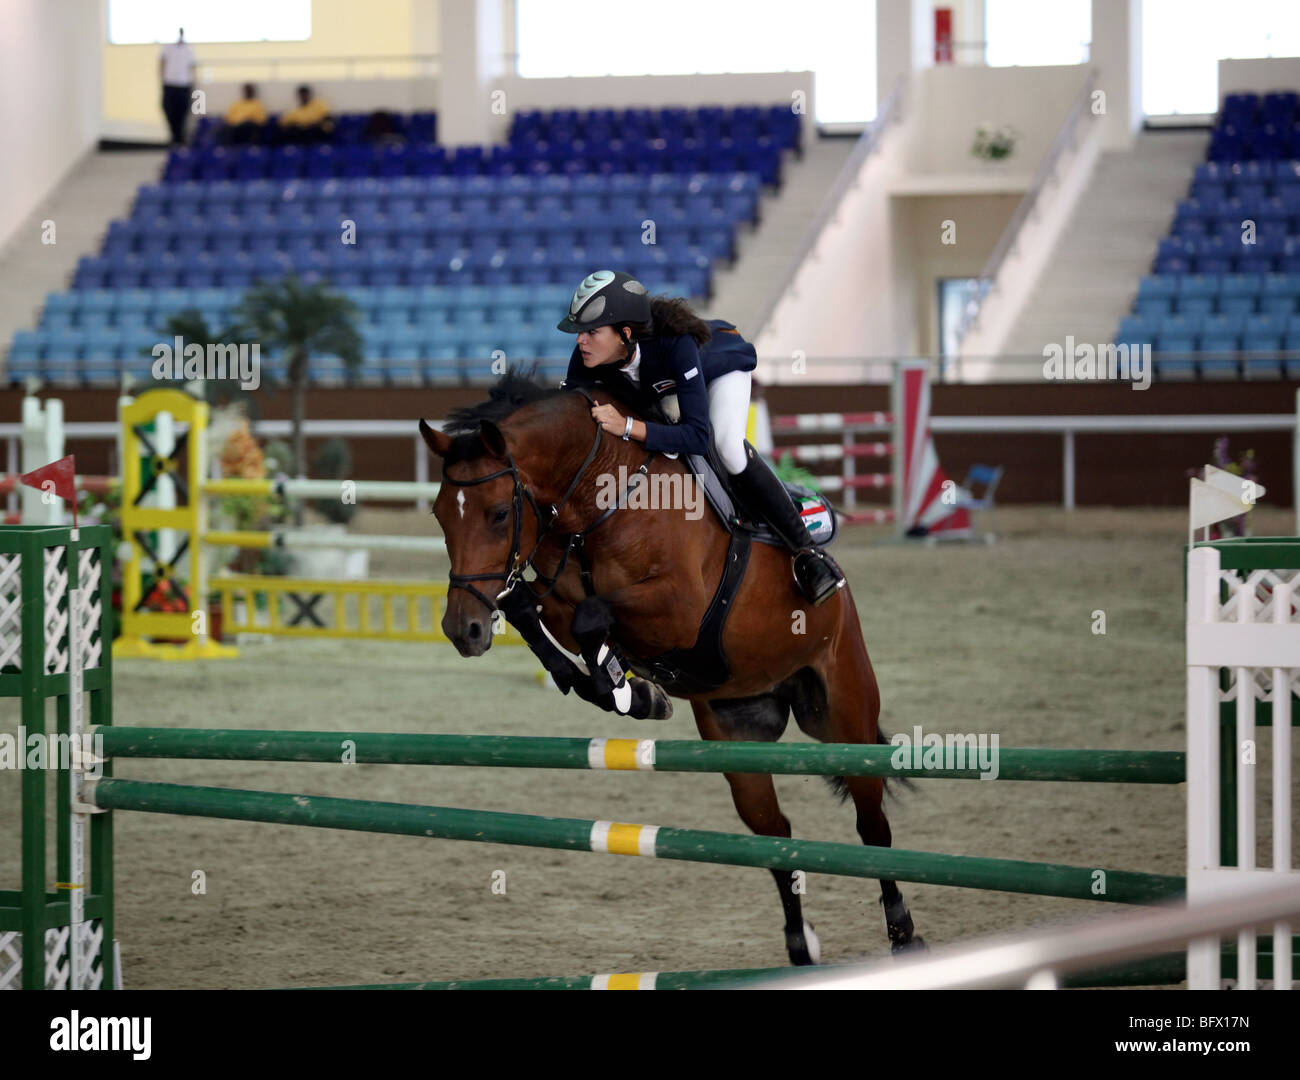 Une femme koweïtienne showjumper en action lors d'un concours régional tenu au Qatar Equestrian Federation's indoor arena à Doha Banque D'Images